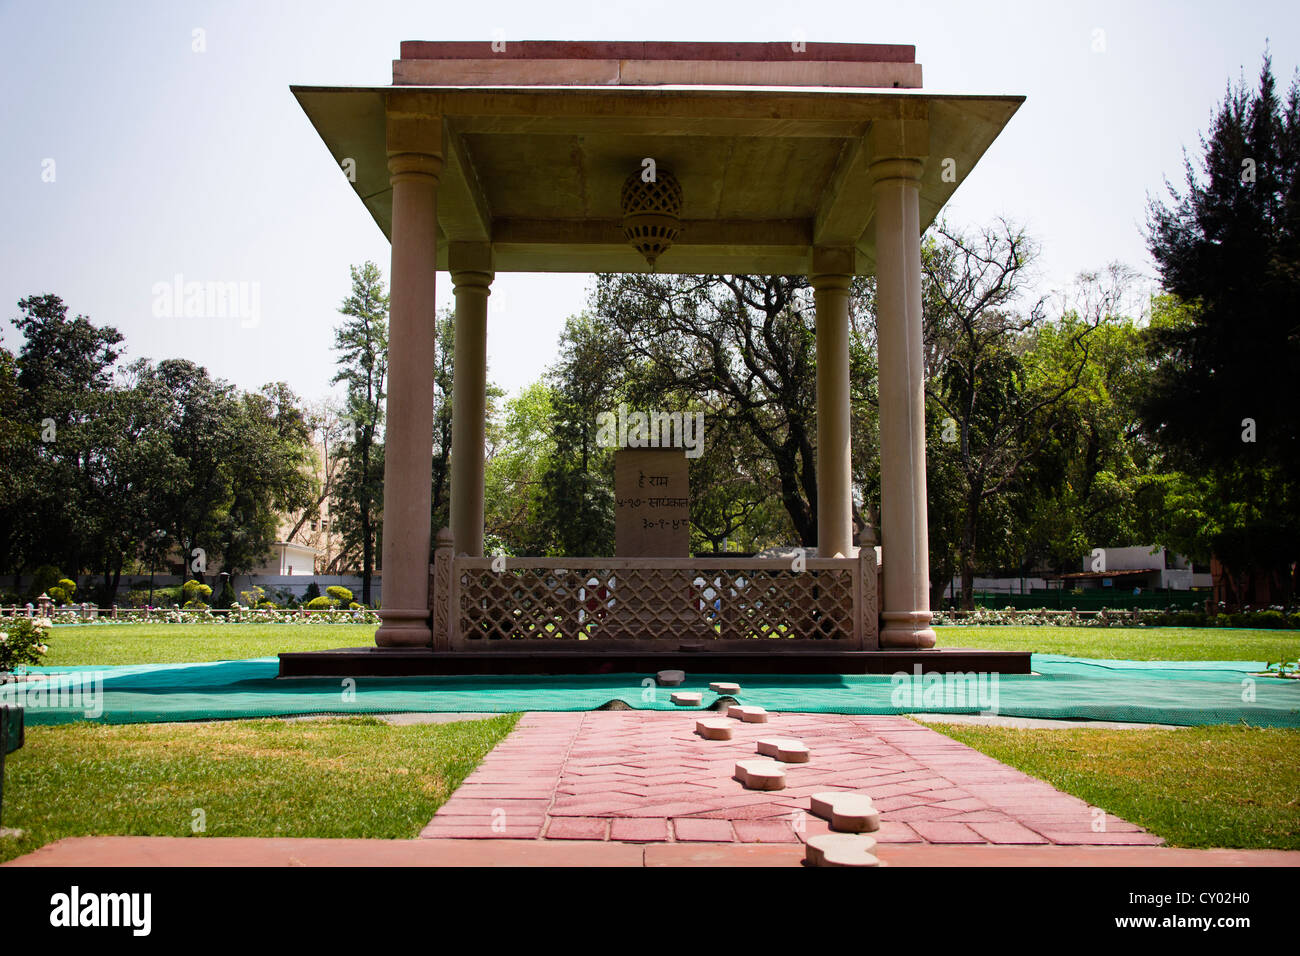 Gandhi Smriti, Eternal Gandhi musée multimédia, dédié au Mahatma Gandhi, l'endroit où il a été tourné, Delhi, Inde, Asie Banque D'Images